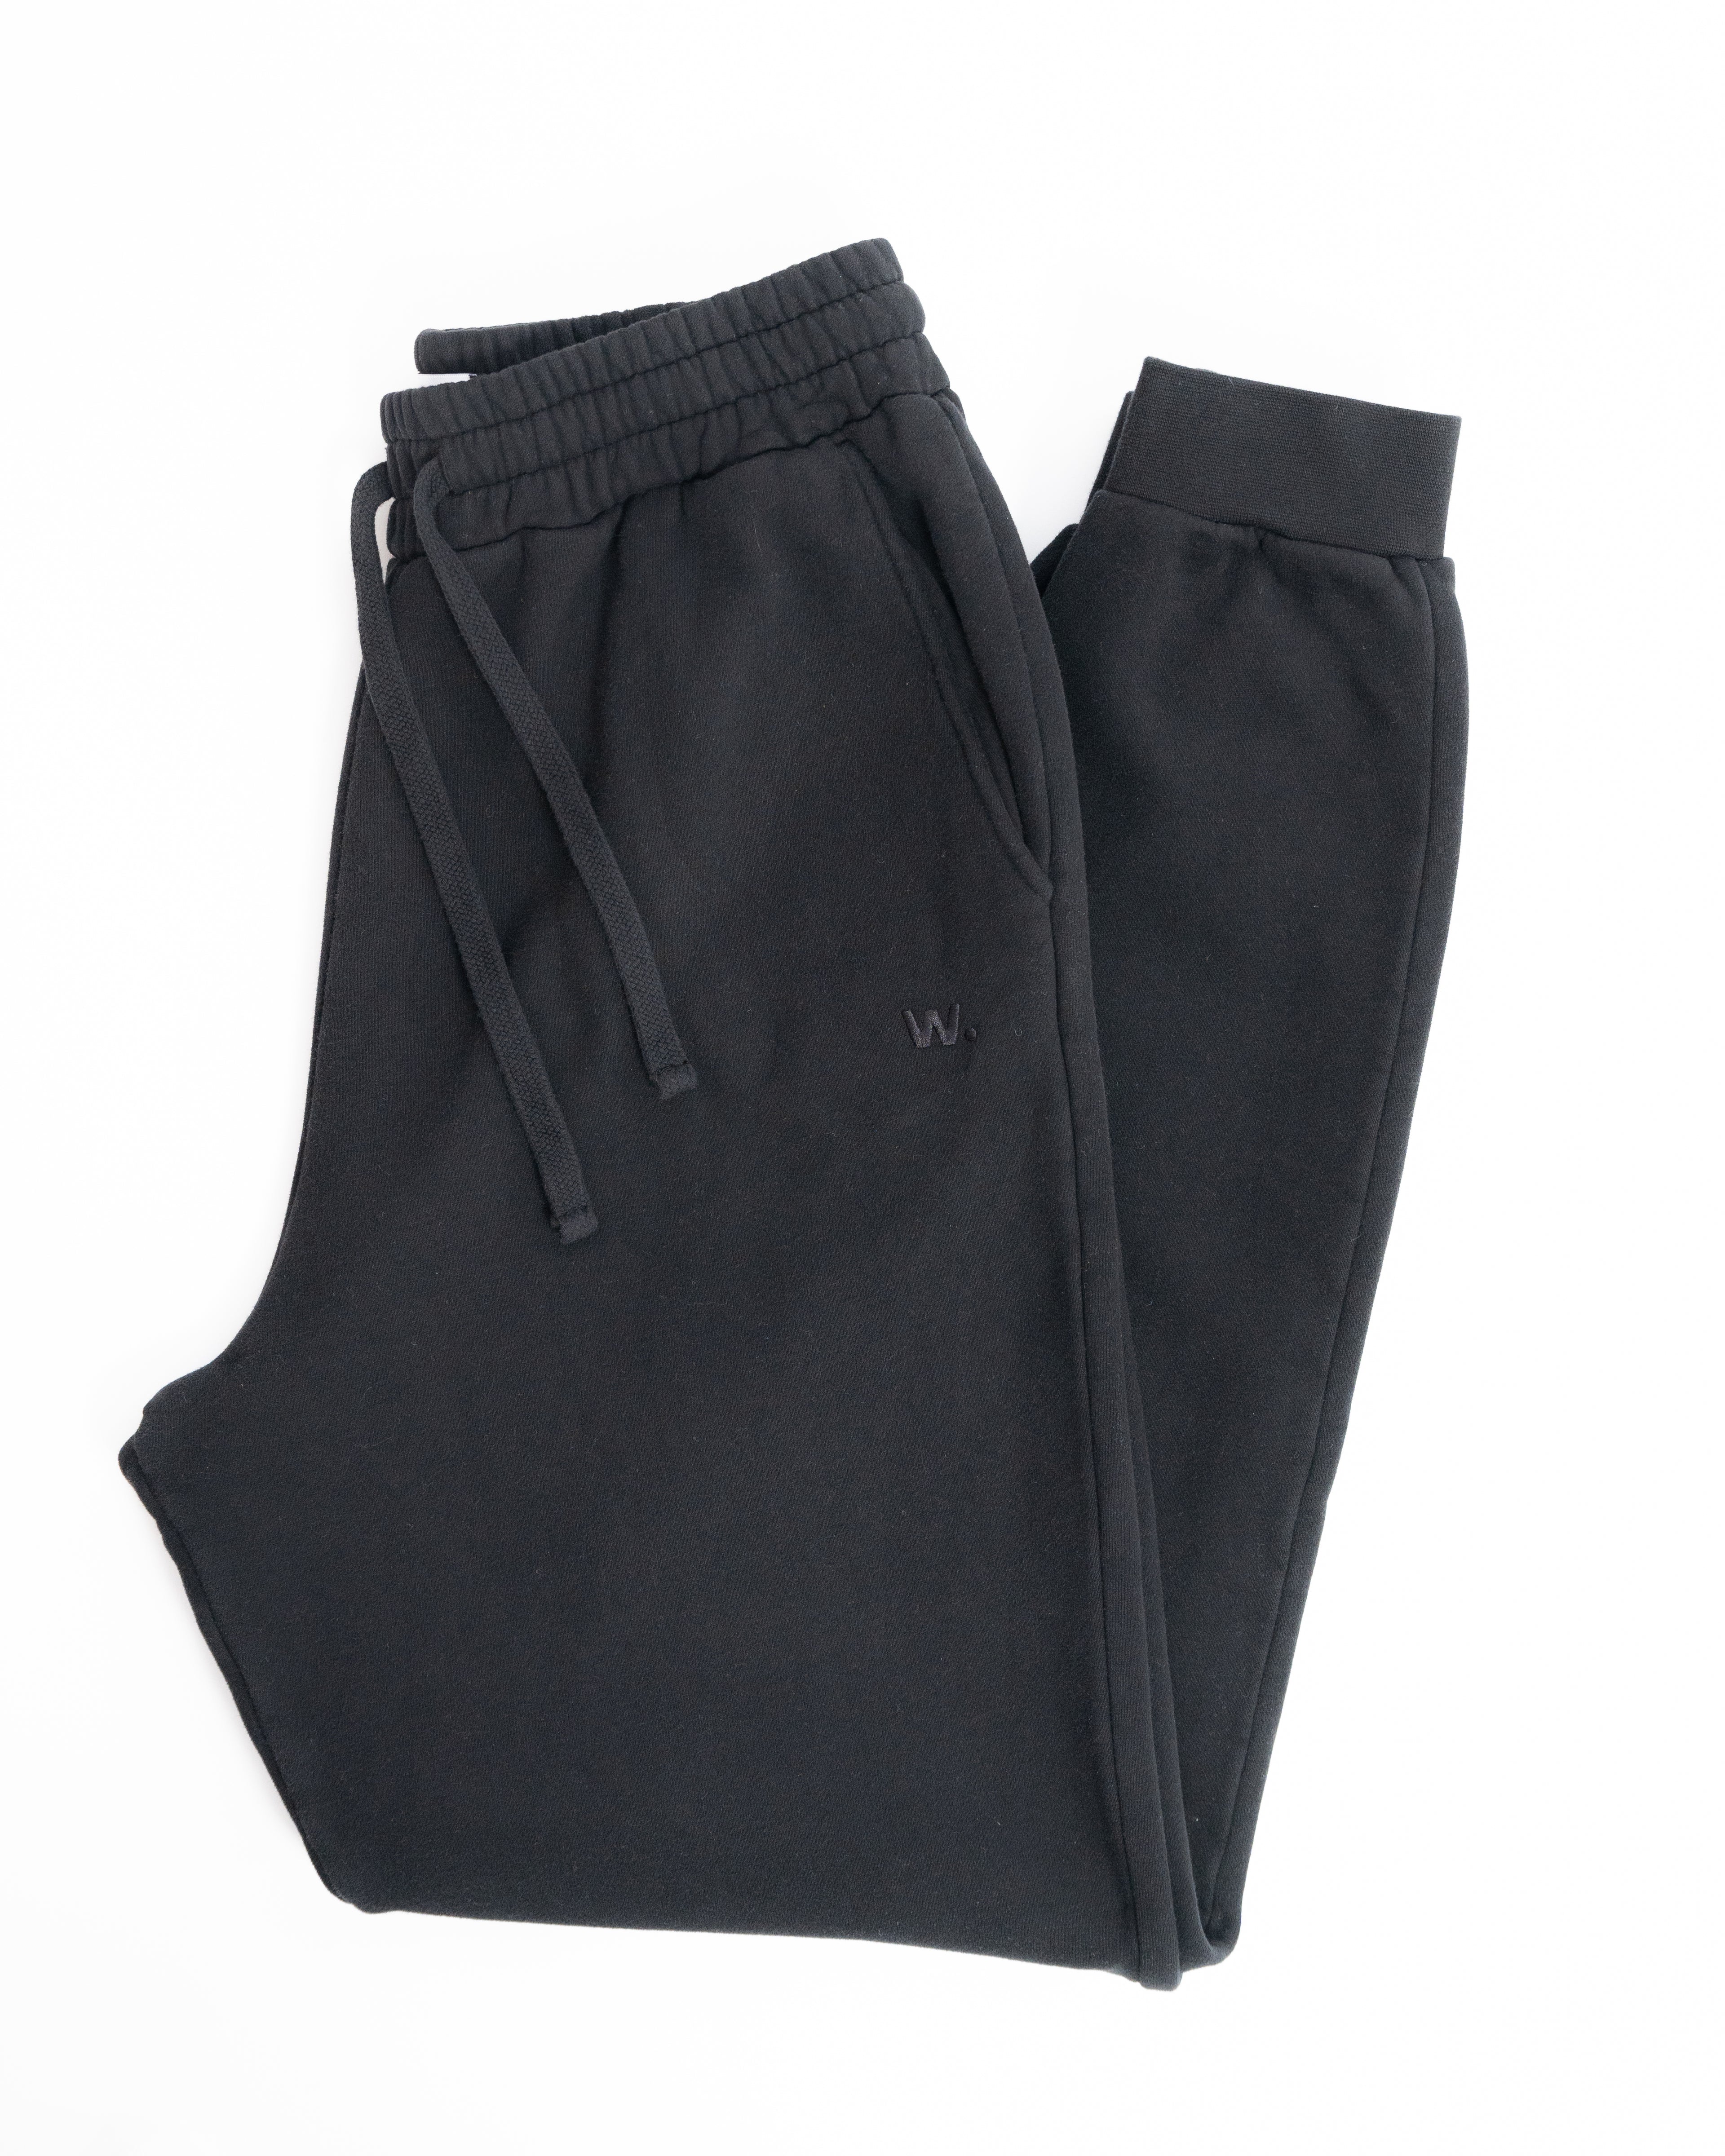 Premium - Sweatpants - Black - Brushed